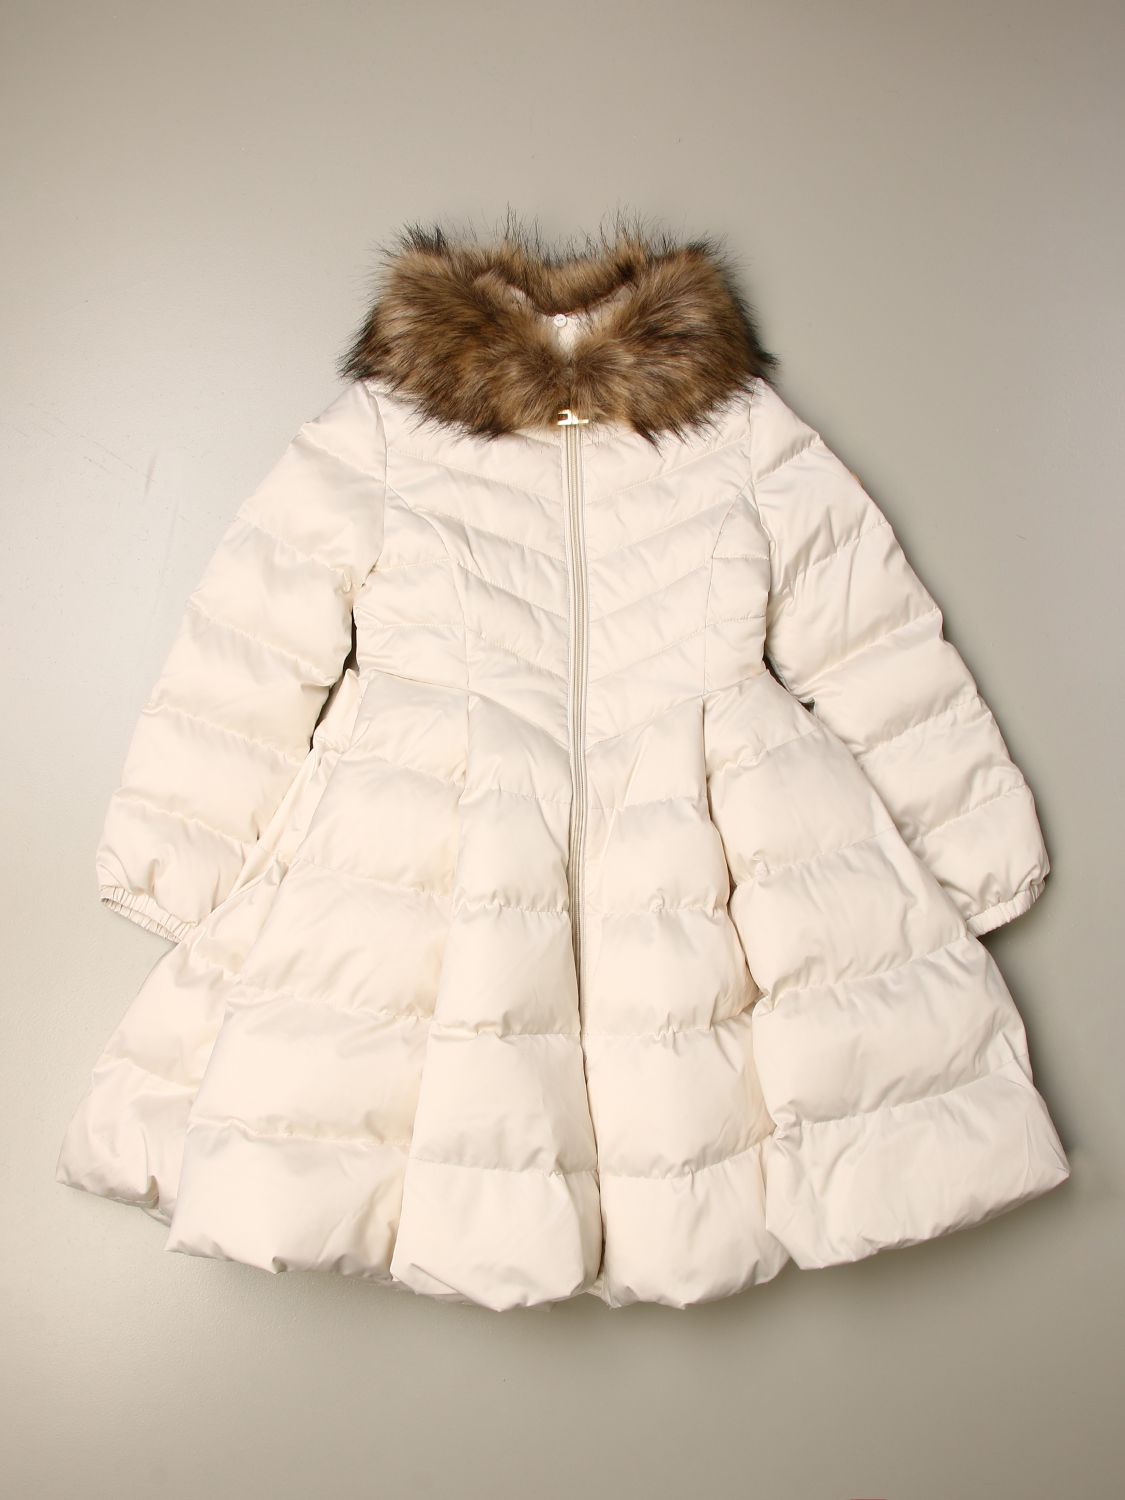 Elisabetta Franchi Outlet: wide down jacket with fur | Jacket ...